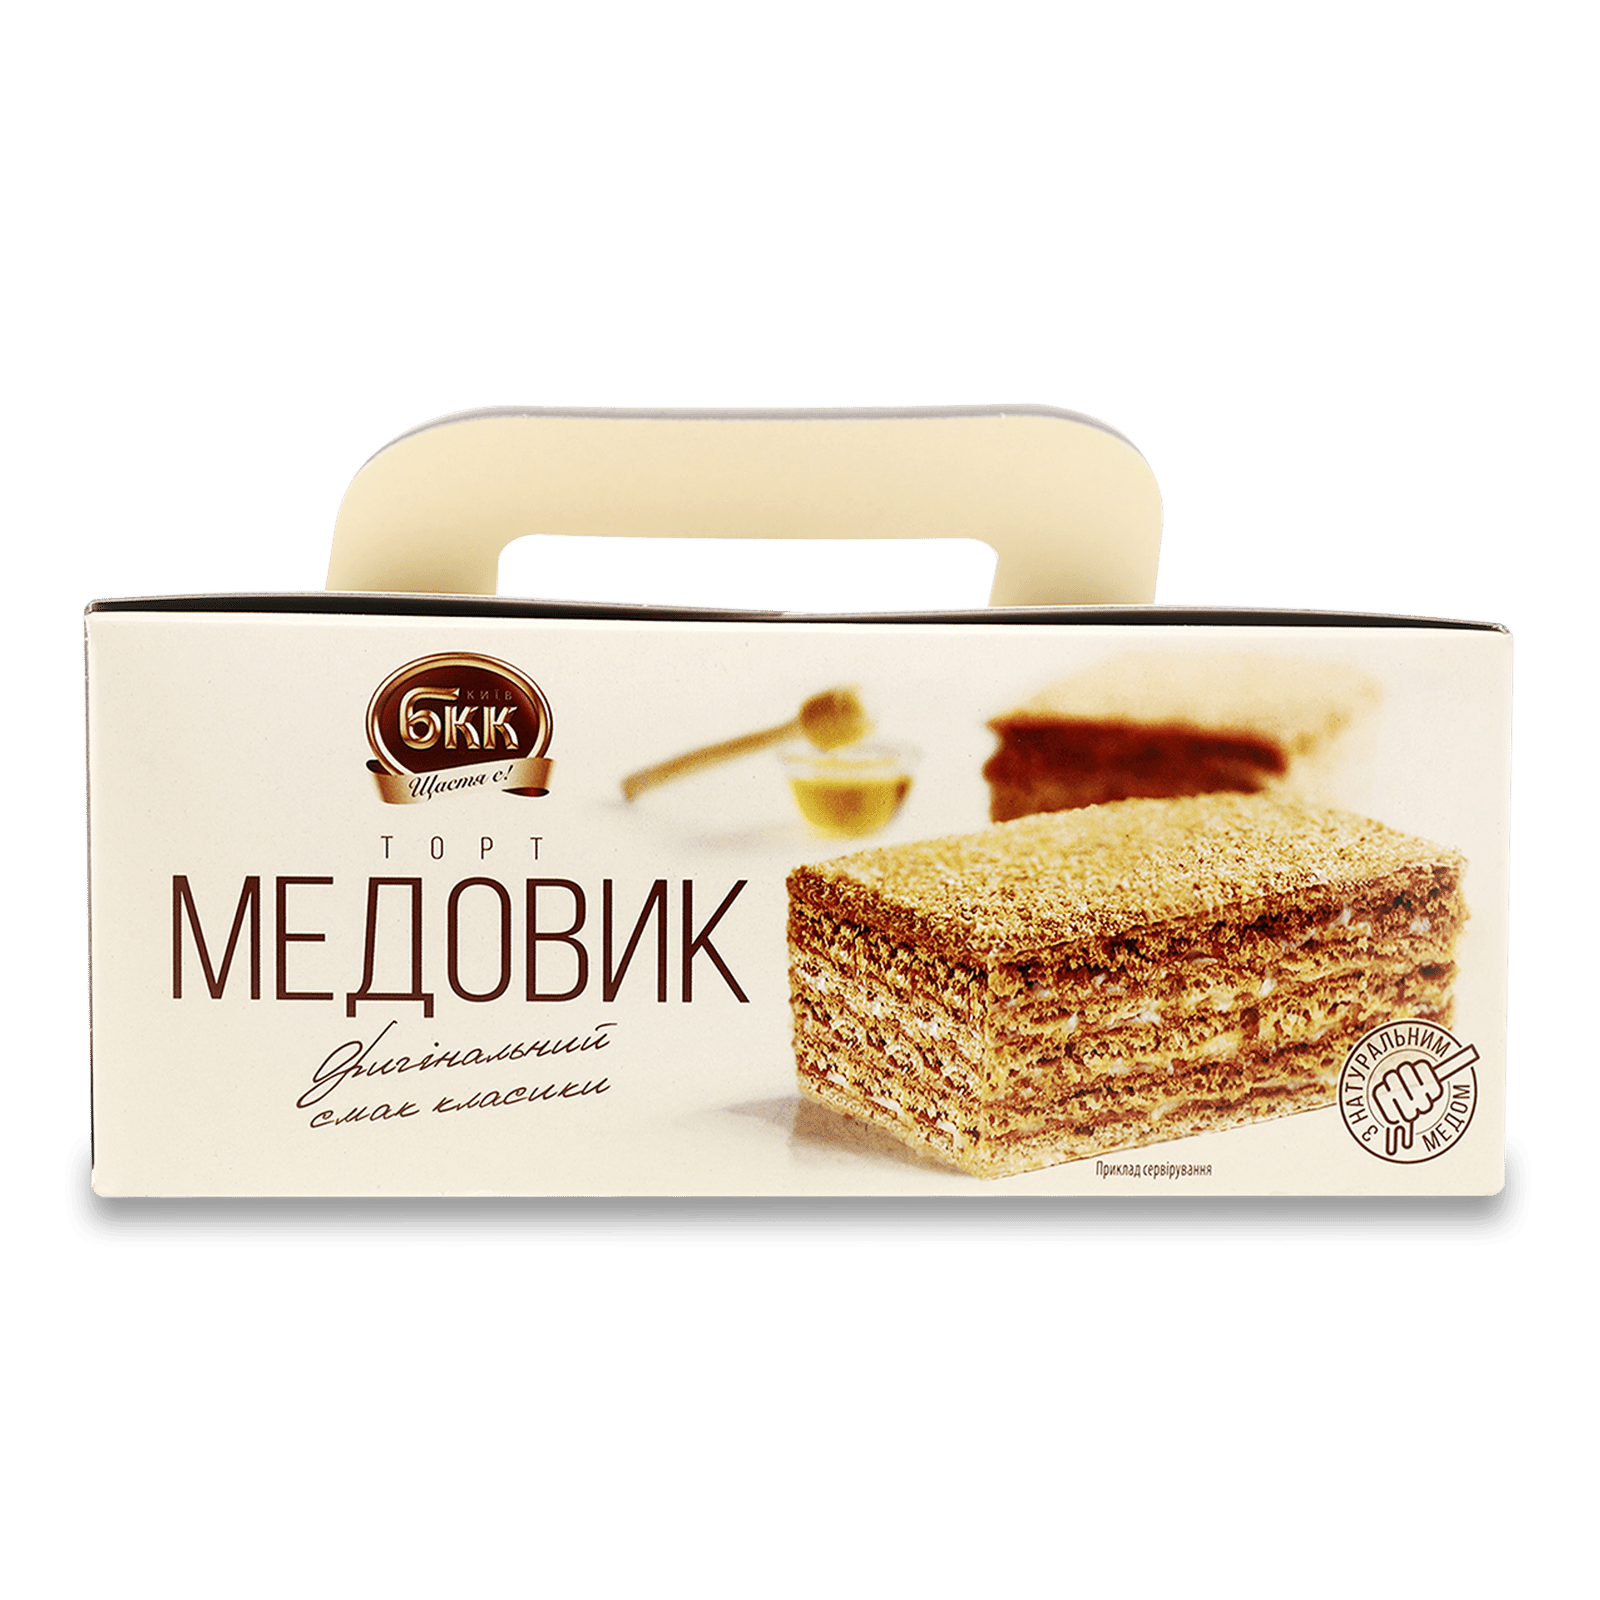 Торт БКК «Медовик» - 1